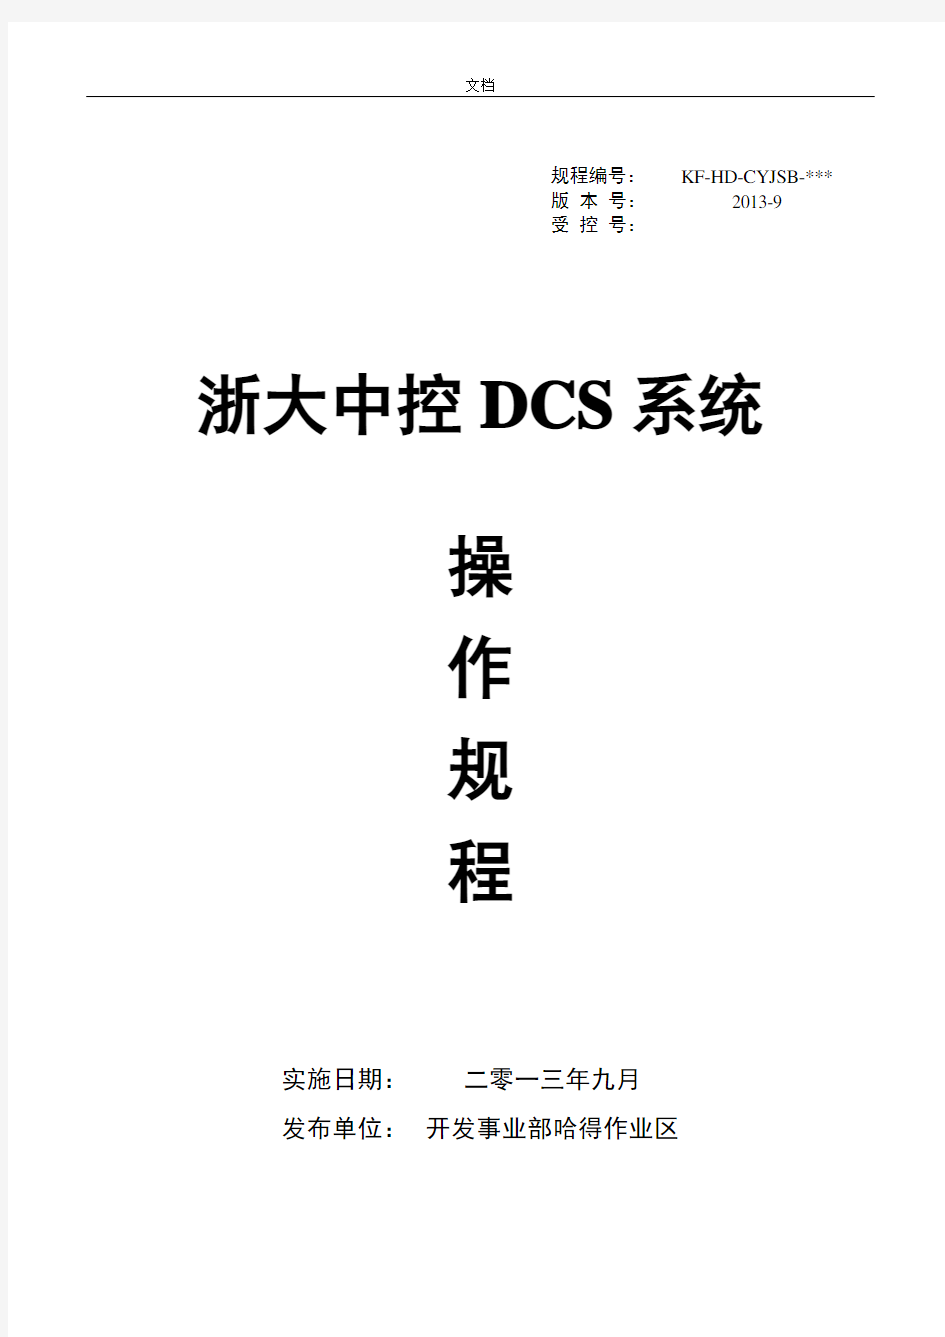 12.浙大中控DCS系统操作规程